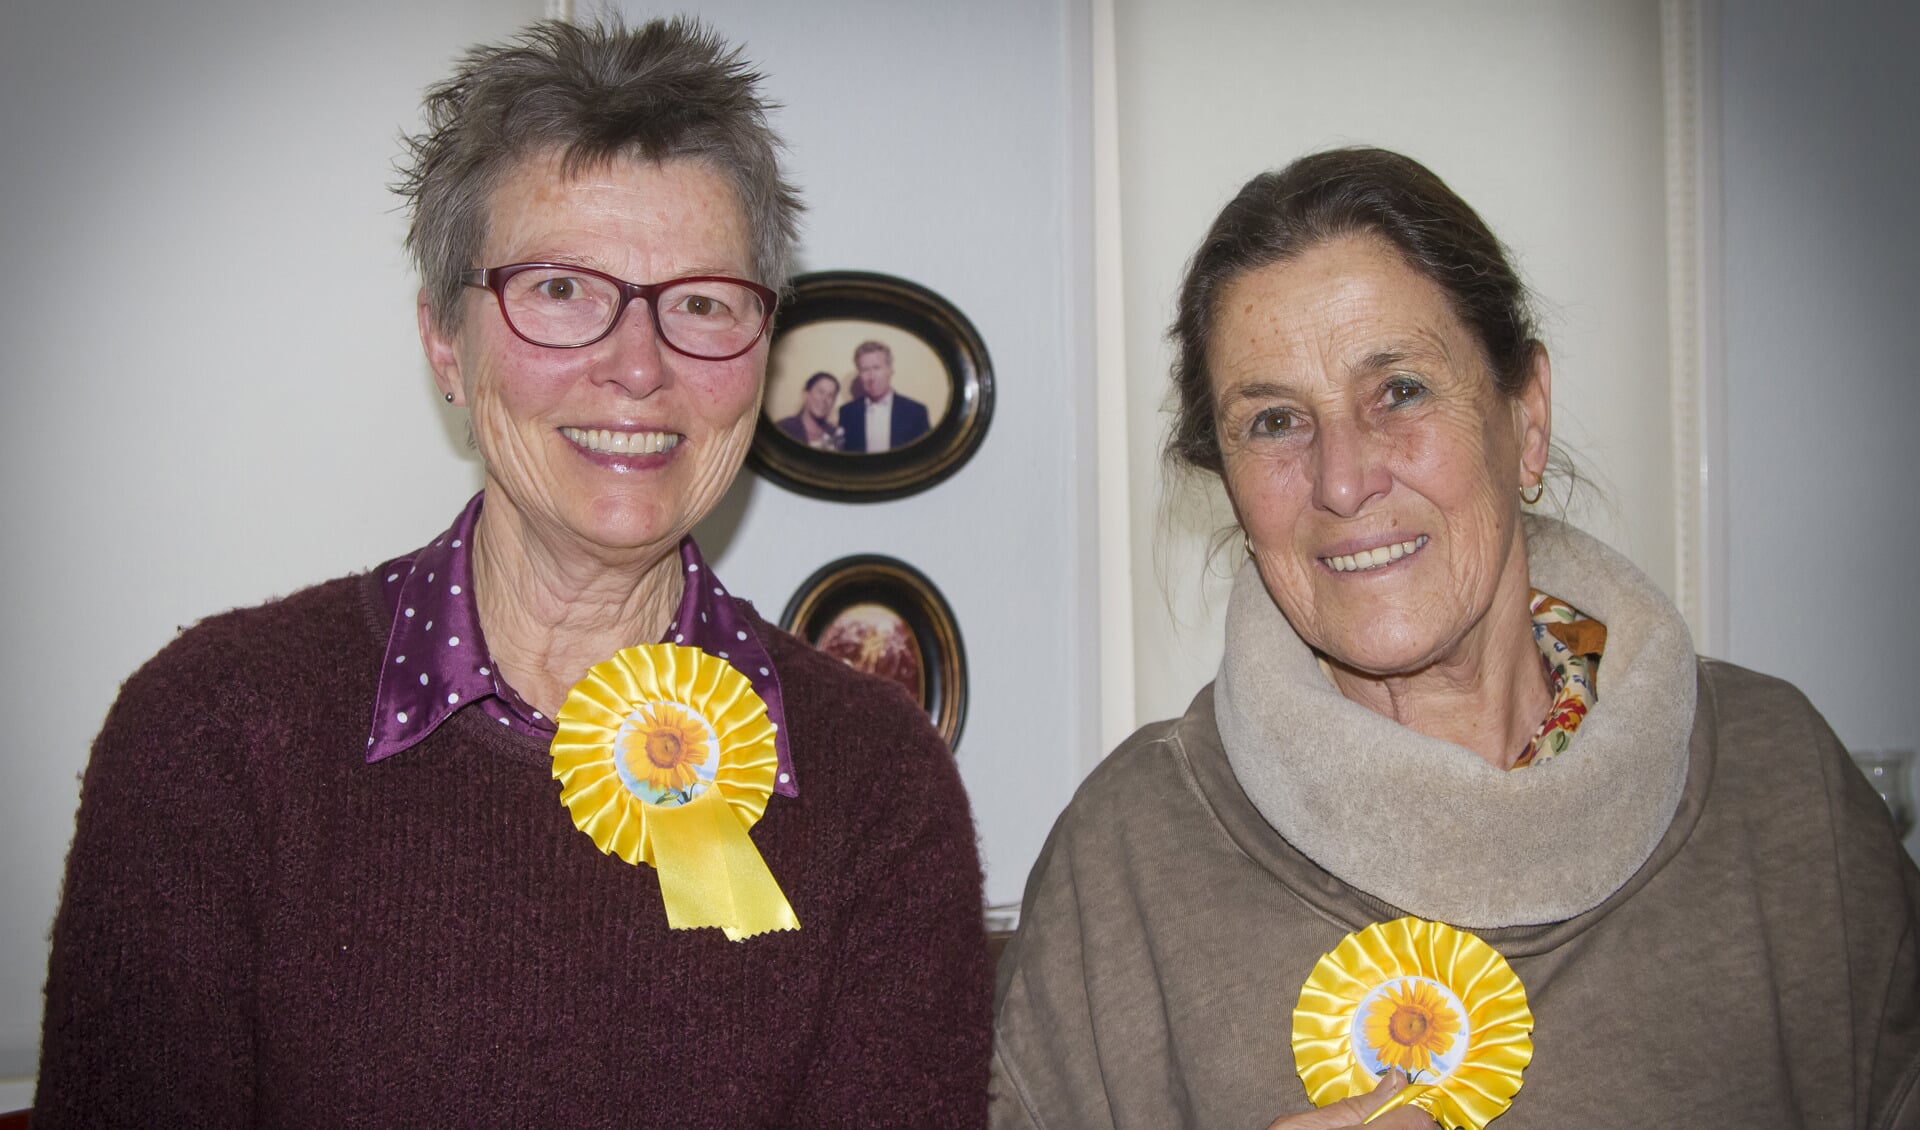 Guurtje Brakenhoff (71) en Ineke Bijman (65) zijn vrijwilligers bij Stichting De Zonnebloem. 